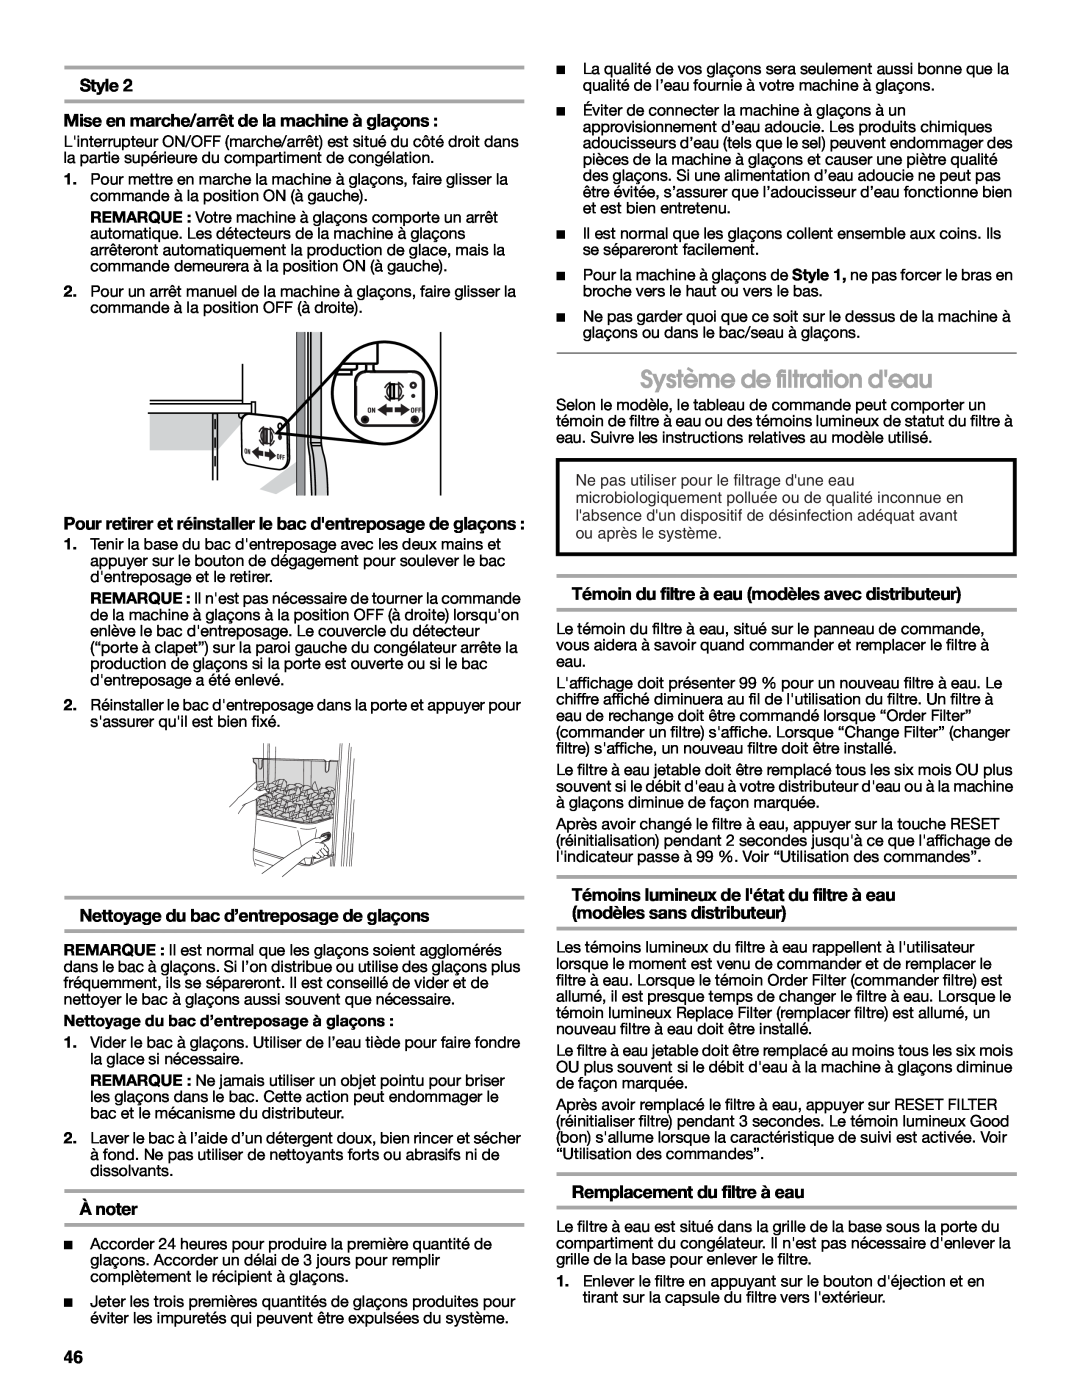 Jenn-Air W10303988A manual Système de filtration deau, Style, Mise en marche/arrêt de la machine à glaçons, Ànoter 